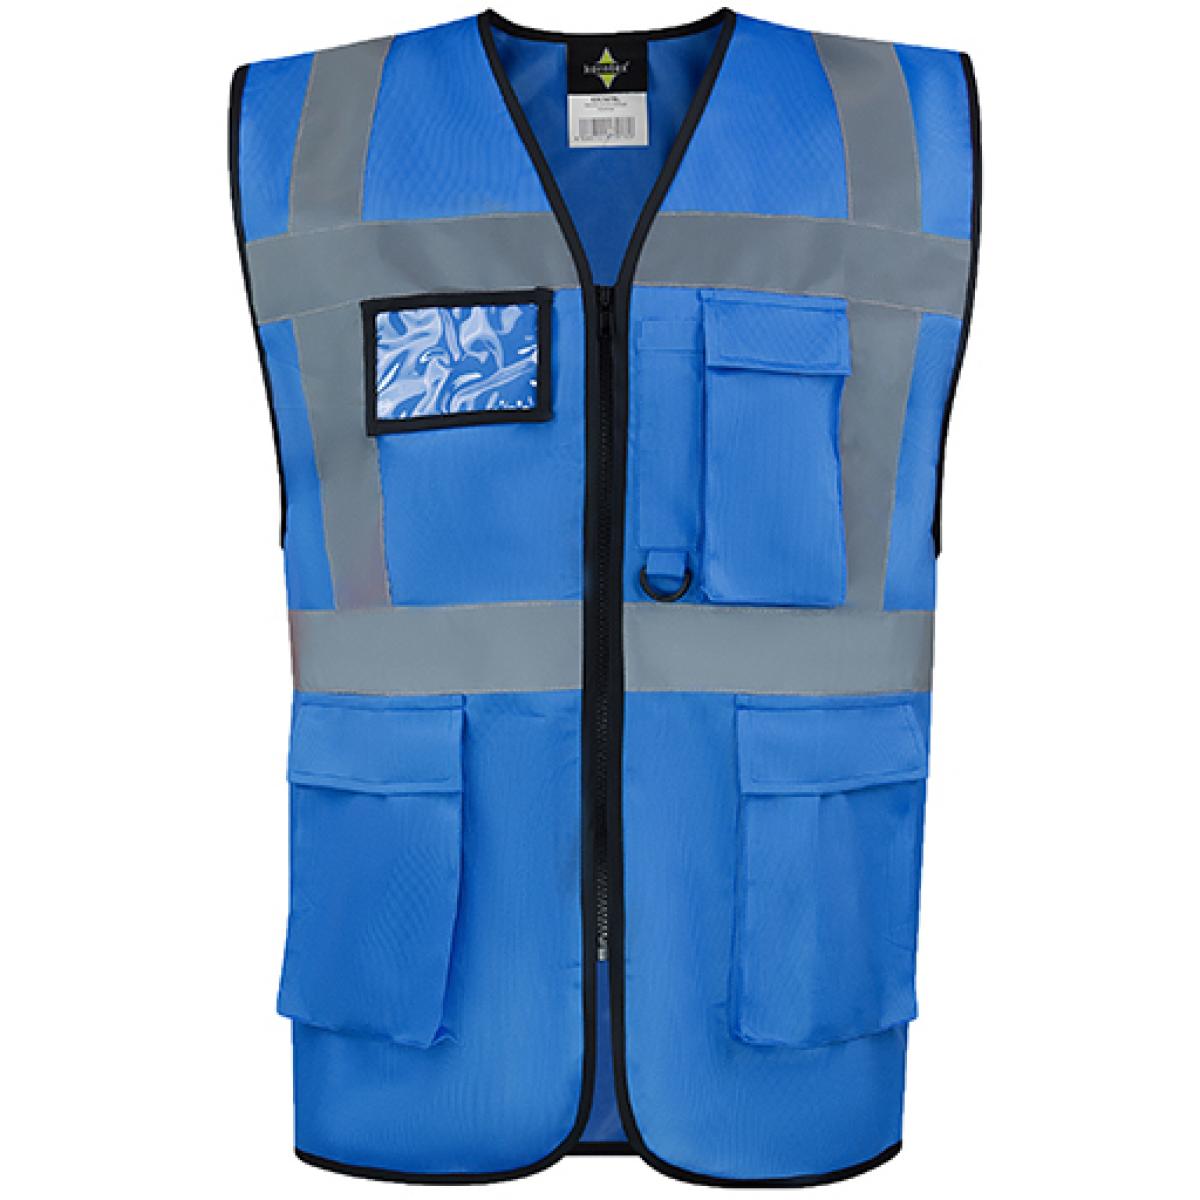 Hersteller: Korntex Herstellernummer: KXCMF Artikelbezeichnung: Comfort Executive Multifunctional Safety Vest Hamburg Farbe: Blue